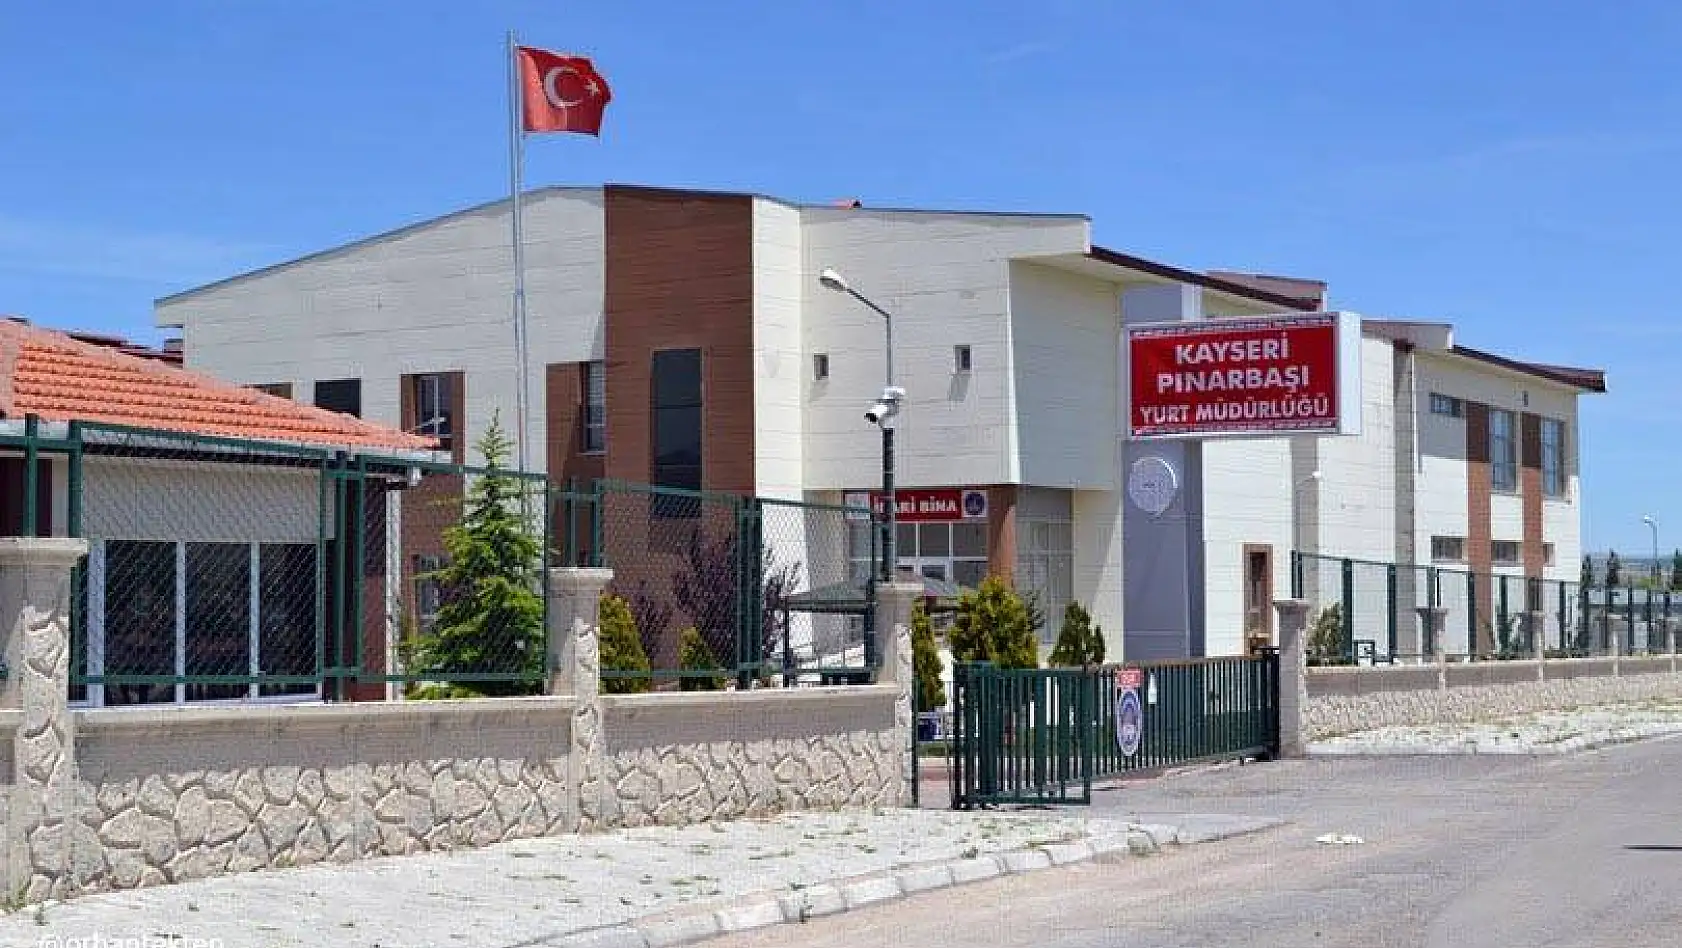 22 öğrenci ve 21 çalışanın olduğu  Pınarbaşı'daki yurt kapandı